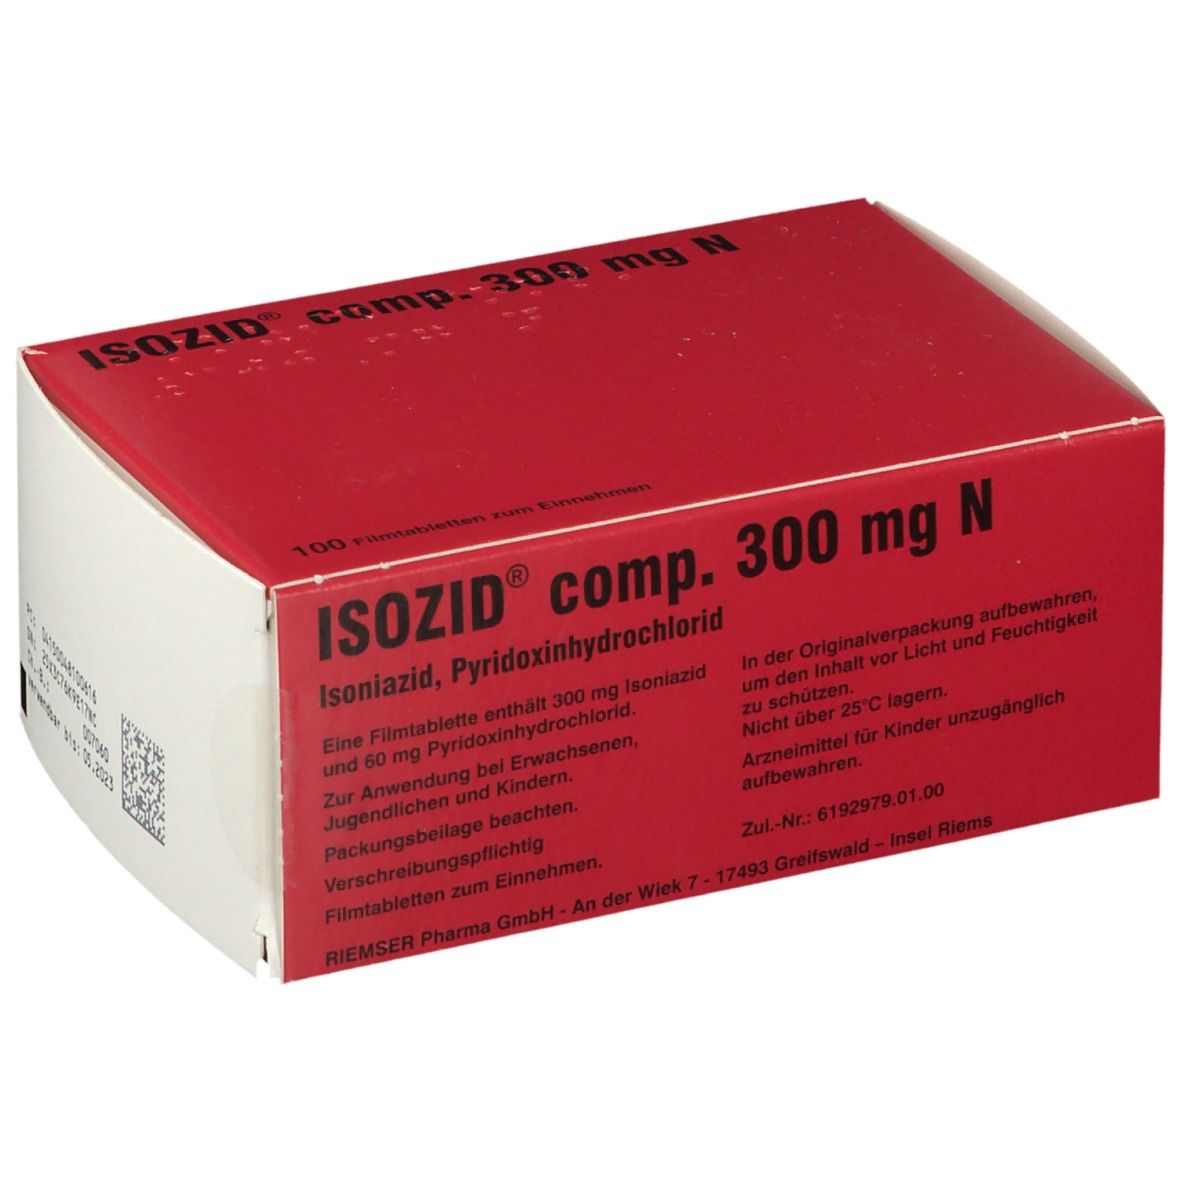 ISOZID® comp. 300 mg N